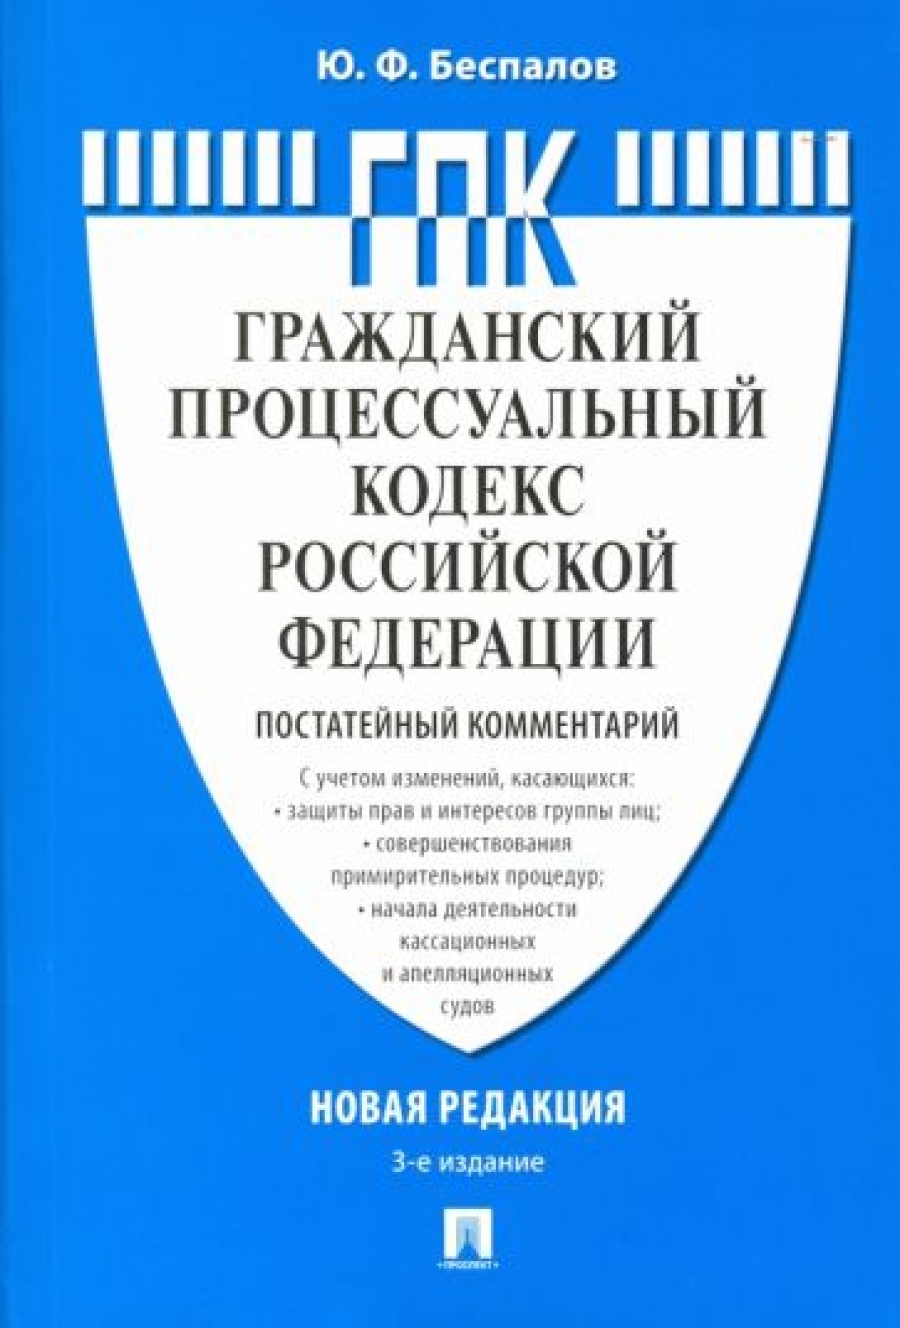 Беспалов Ю.Ф. Гражданский процессуальный кодекс Российской Федерации (постатейный комментарий) 